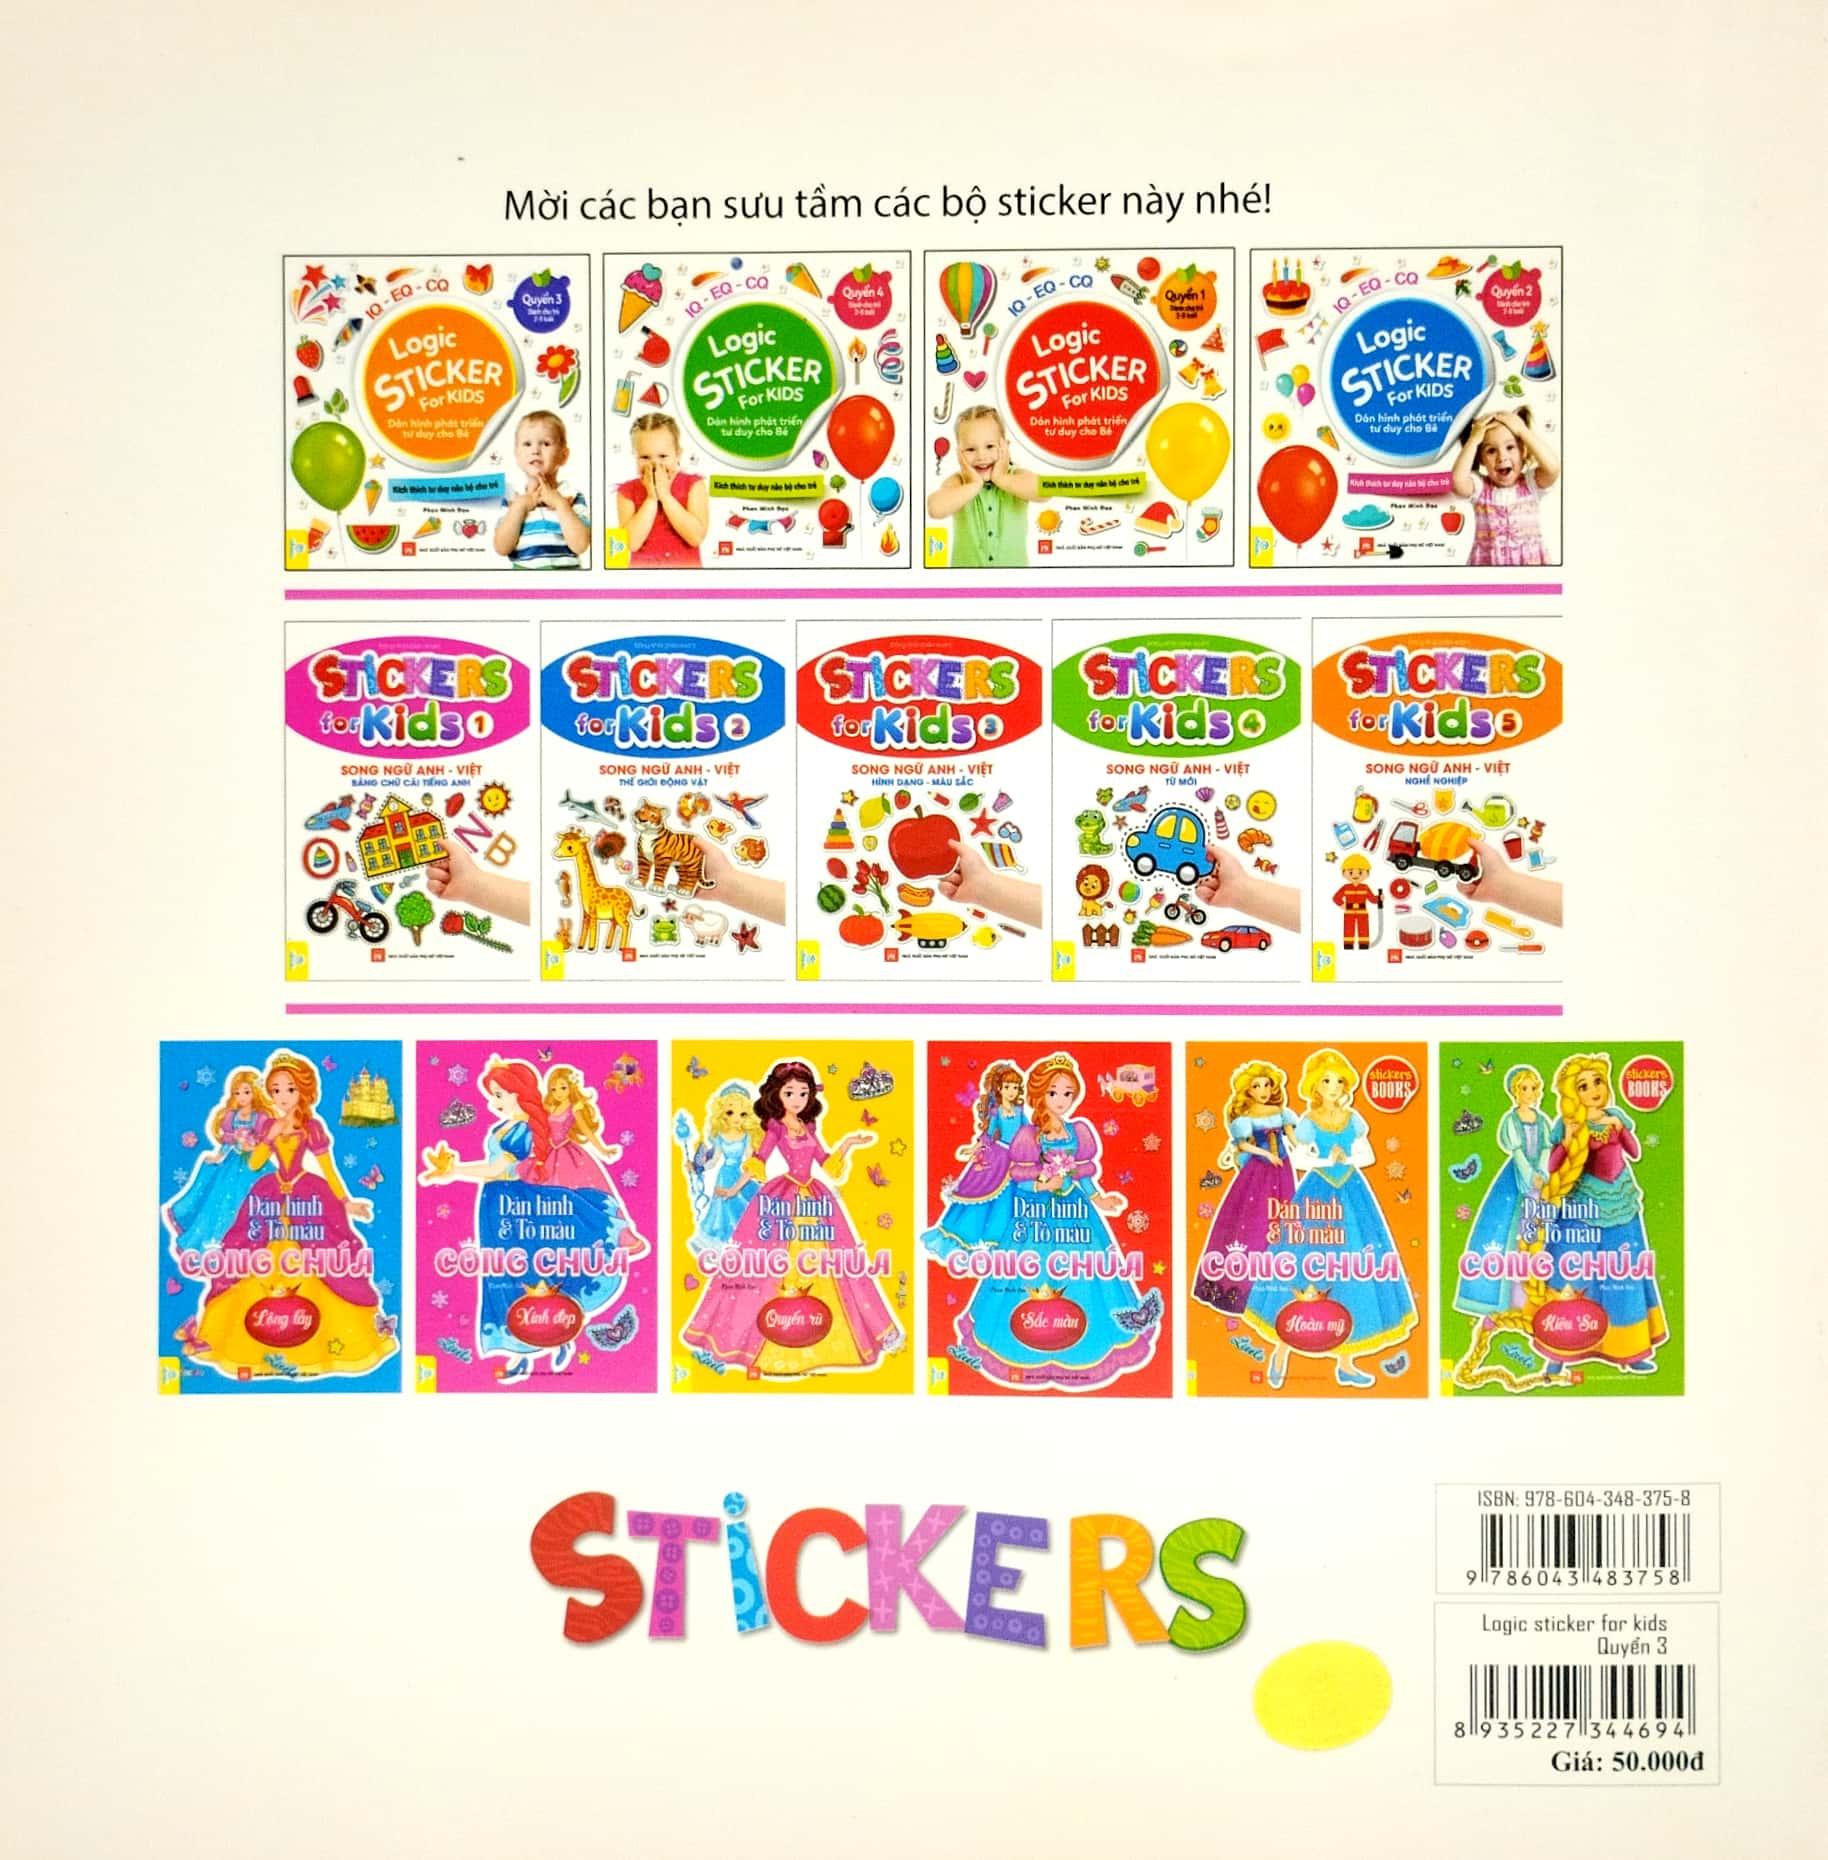 Logic Sticker For Kids - Dán Hình Phát Triển Tư Duy Cho Bé - Quyển 3 (Dành Cho Trẻ 2-8 Tuổi)